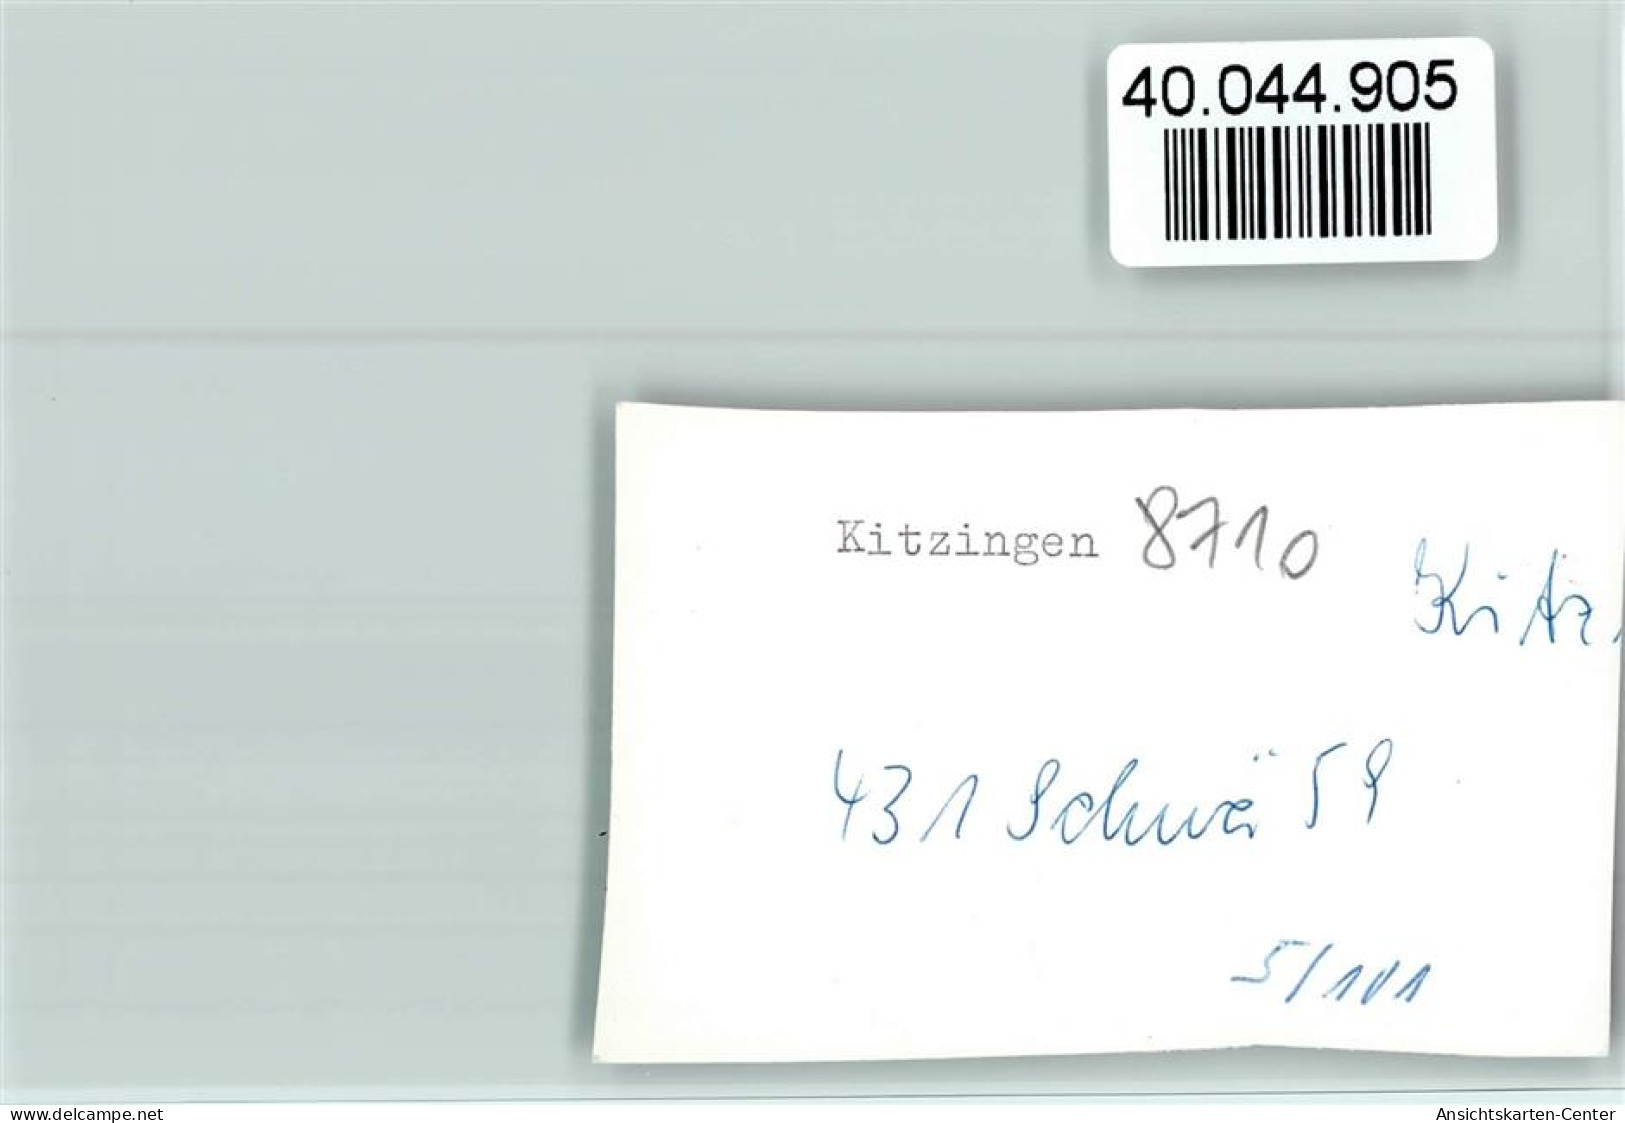 40044905 - Kitzingen - Kitzingen